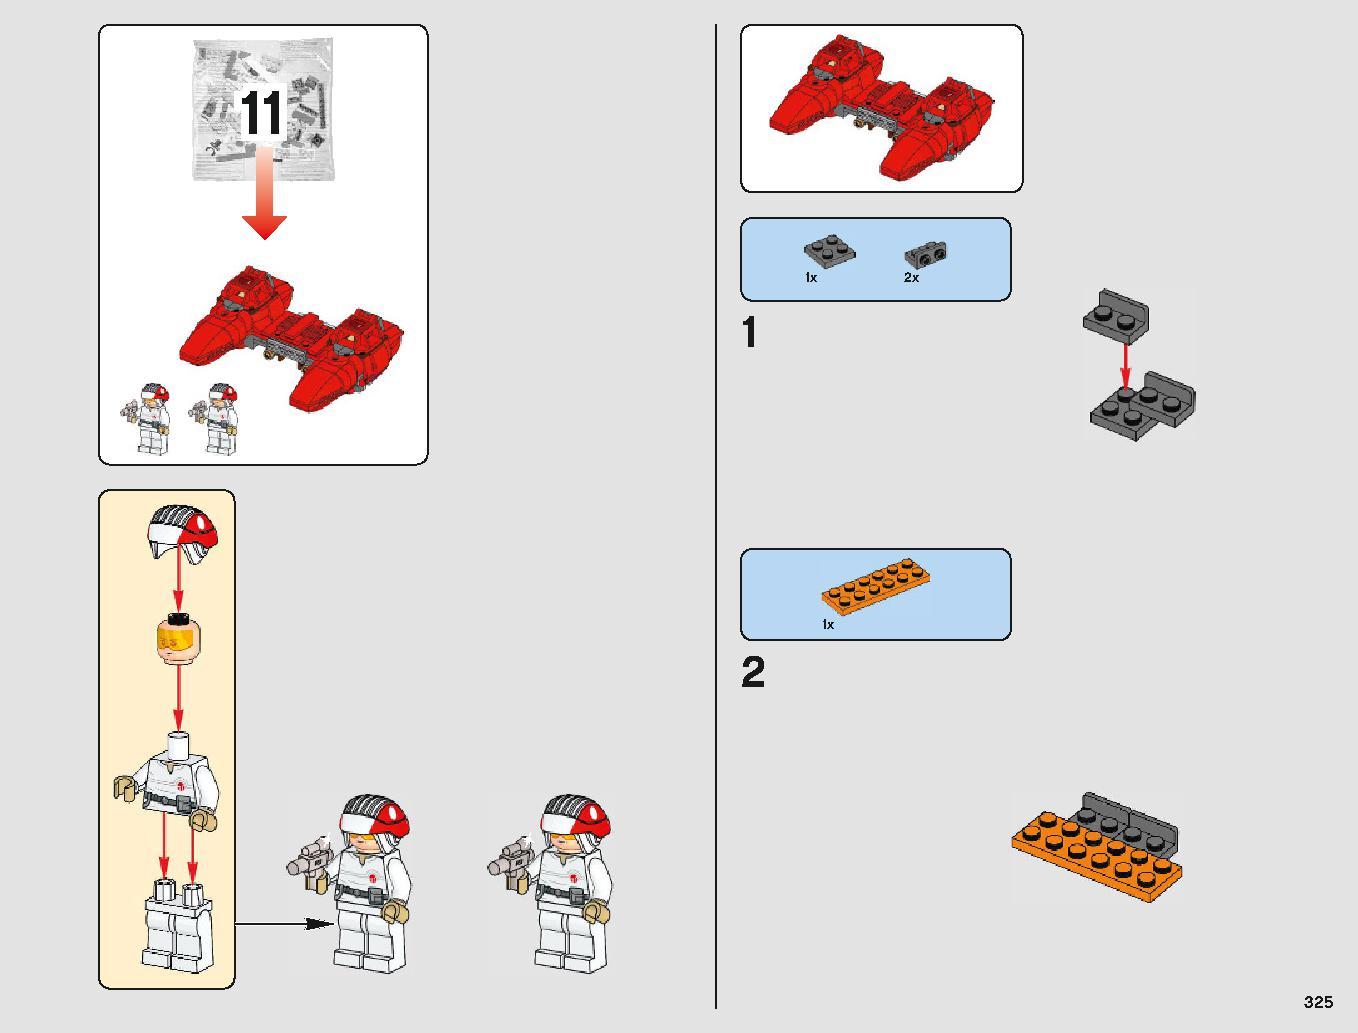 クラウド・シティ 75222 レゴの商品情報 レゴの説明書・組立方法 325 page